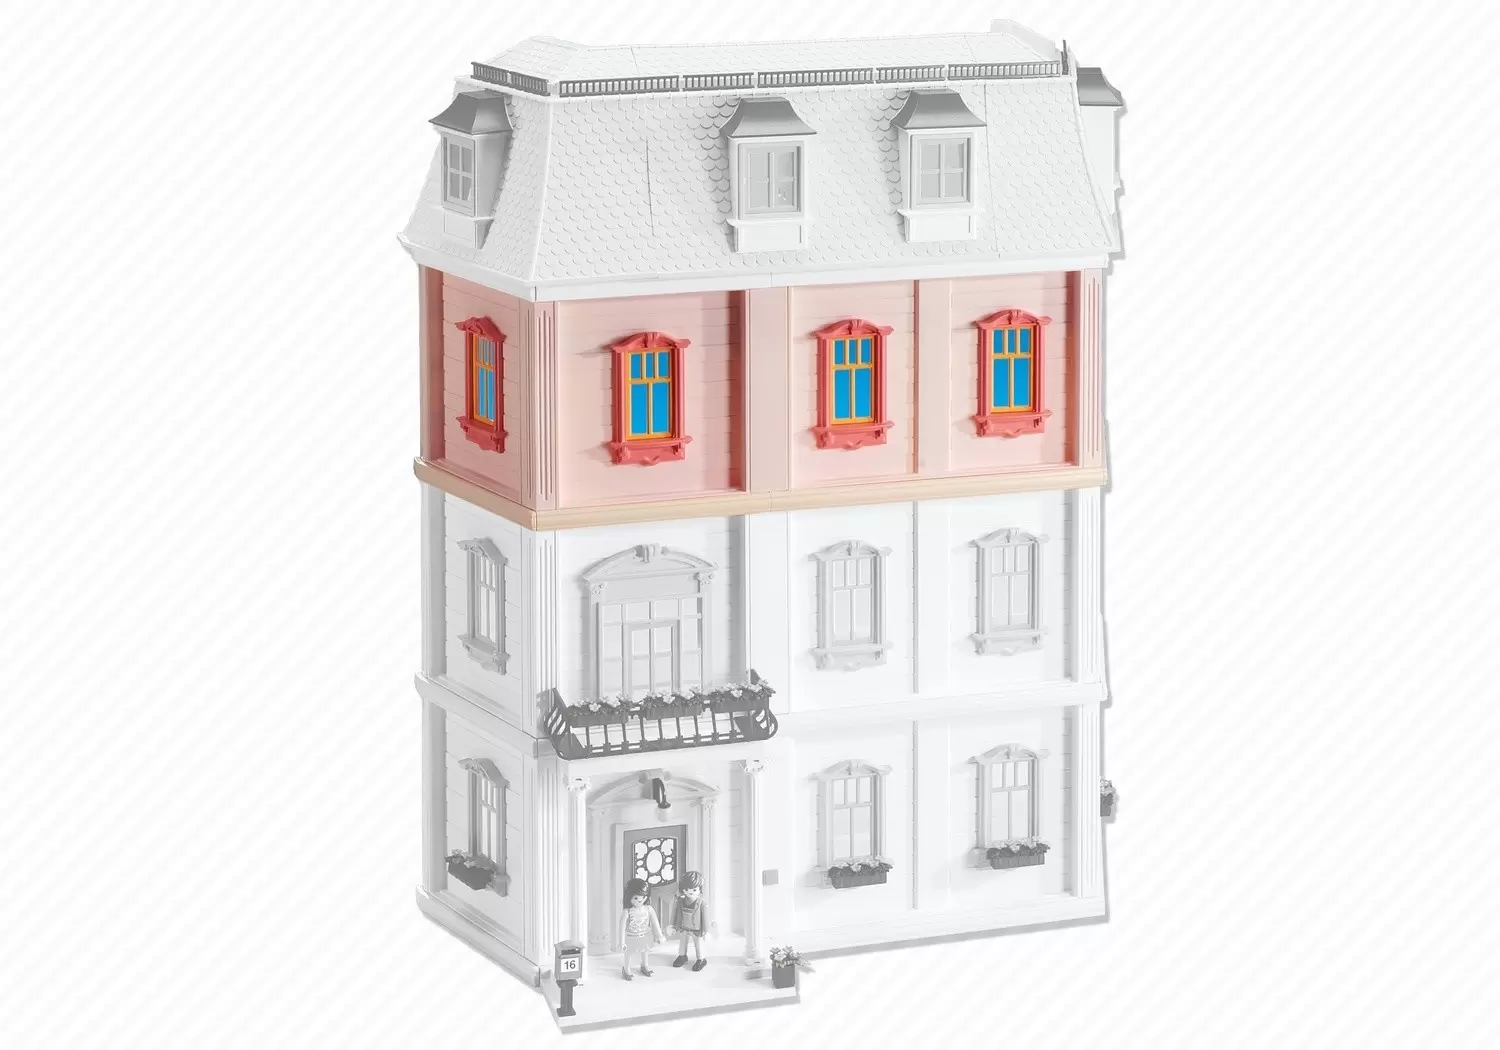 Accessoires & décorations Playmobil - Etage supplémentaire pour maison traditionnelle (Réf. 5303)